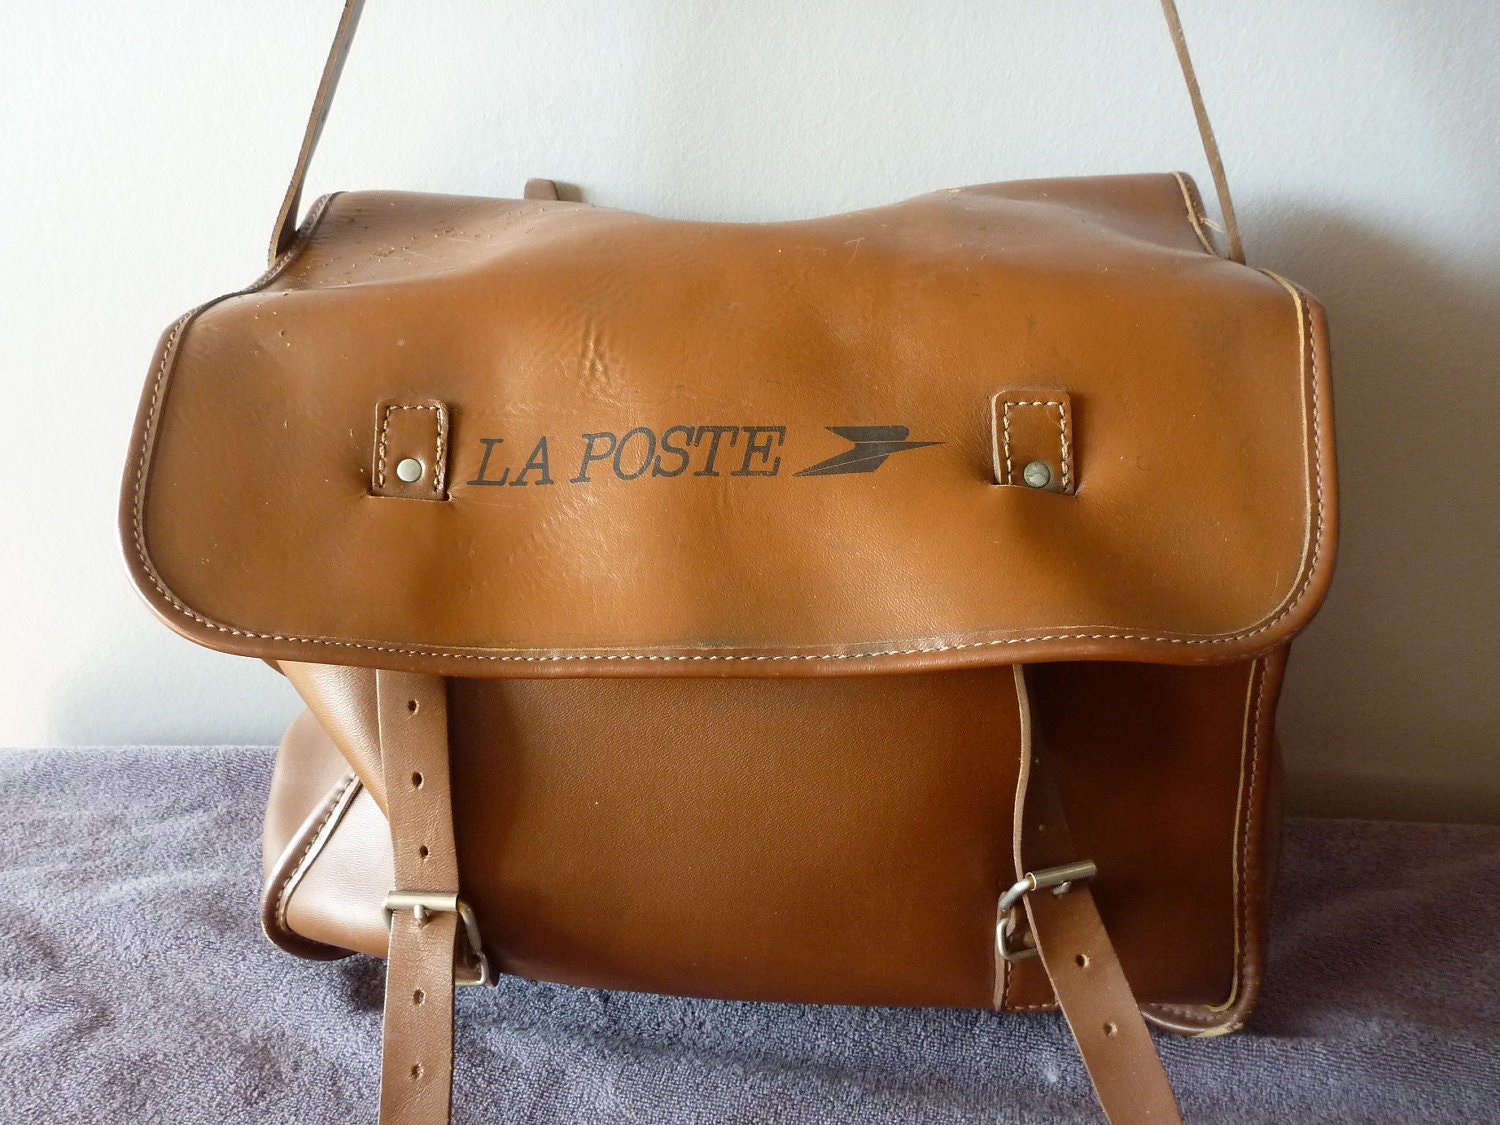 SALE Vintage French La Poste large leather Mail Bag Bike Bag